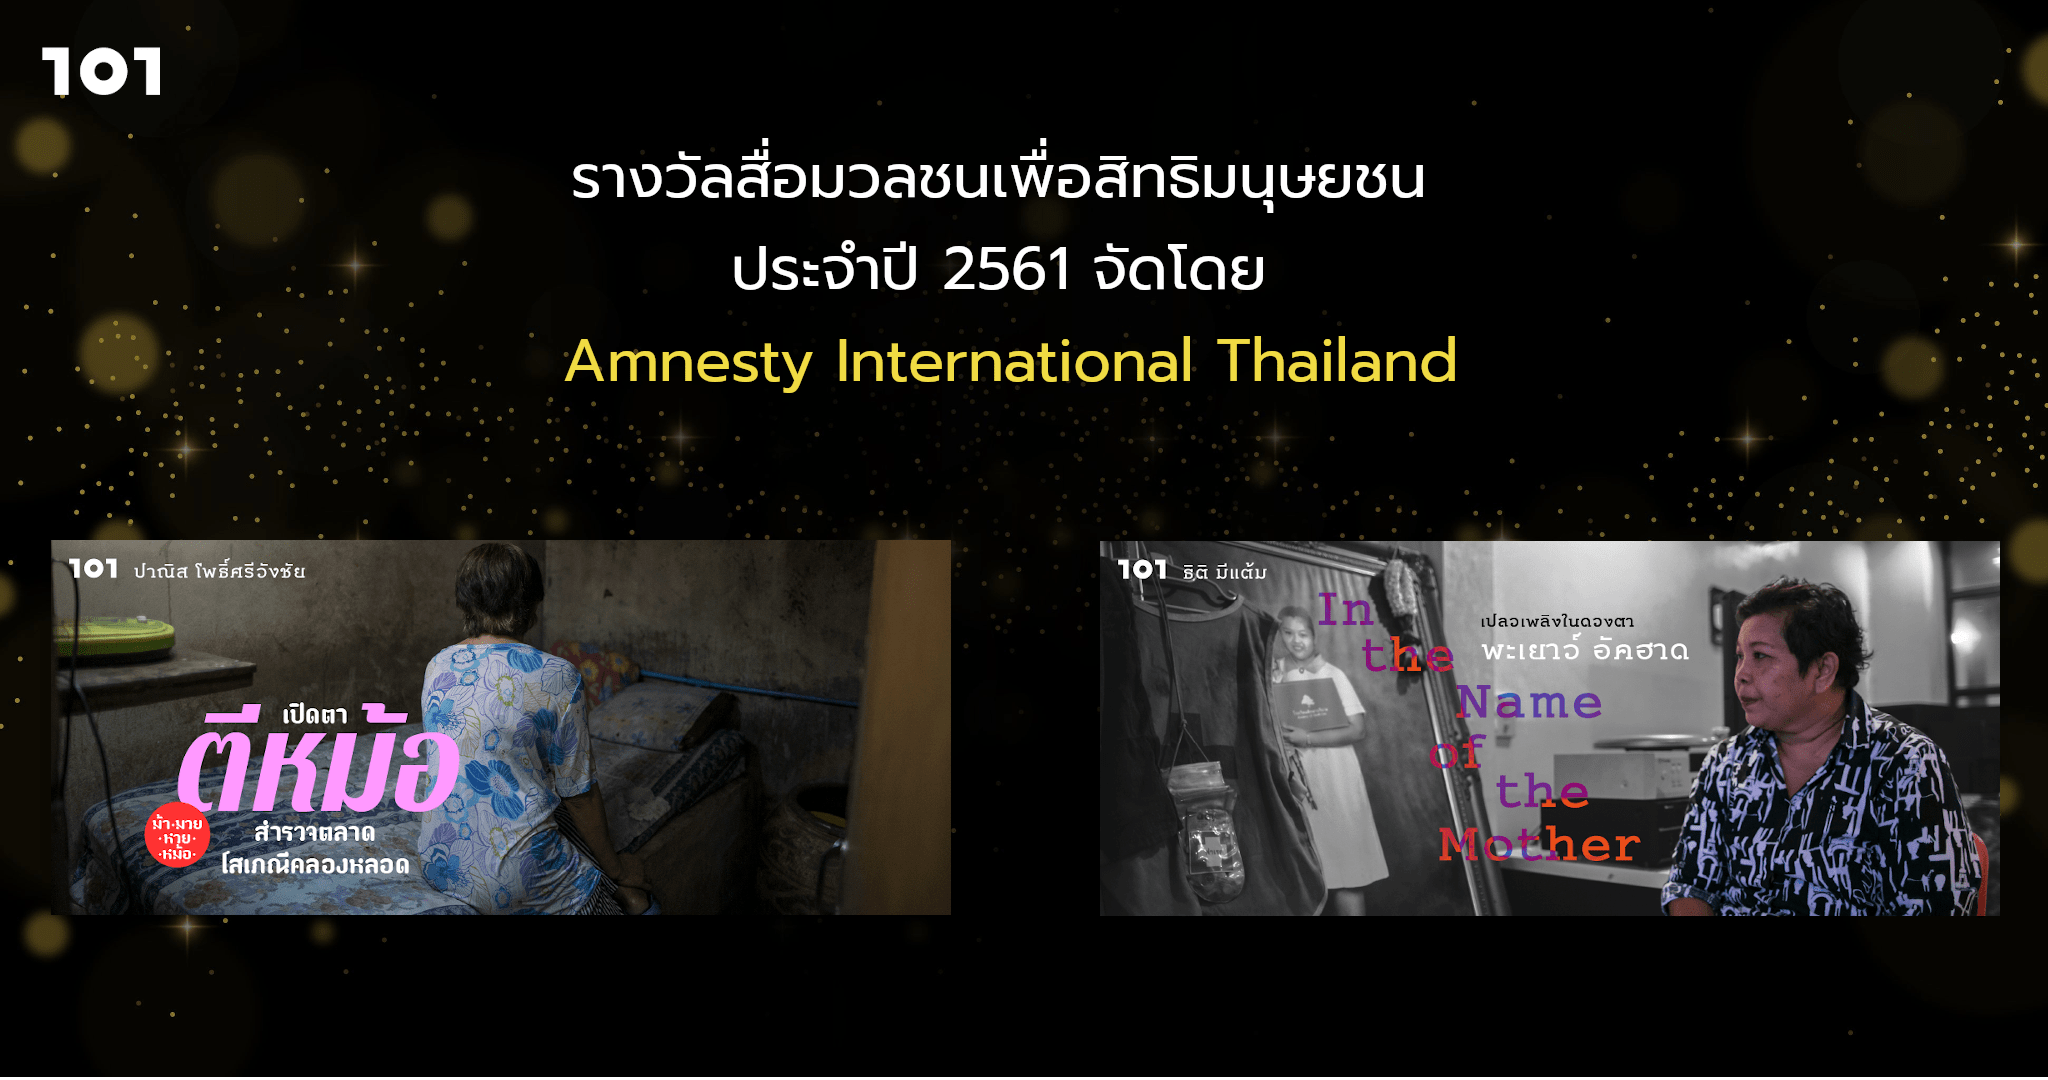 รางวัลสื่อมวลชนเพื่อสิทธิมนุษยชน ประจำปี 2561 จัดโดย Amnesty International Thailand